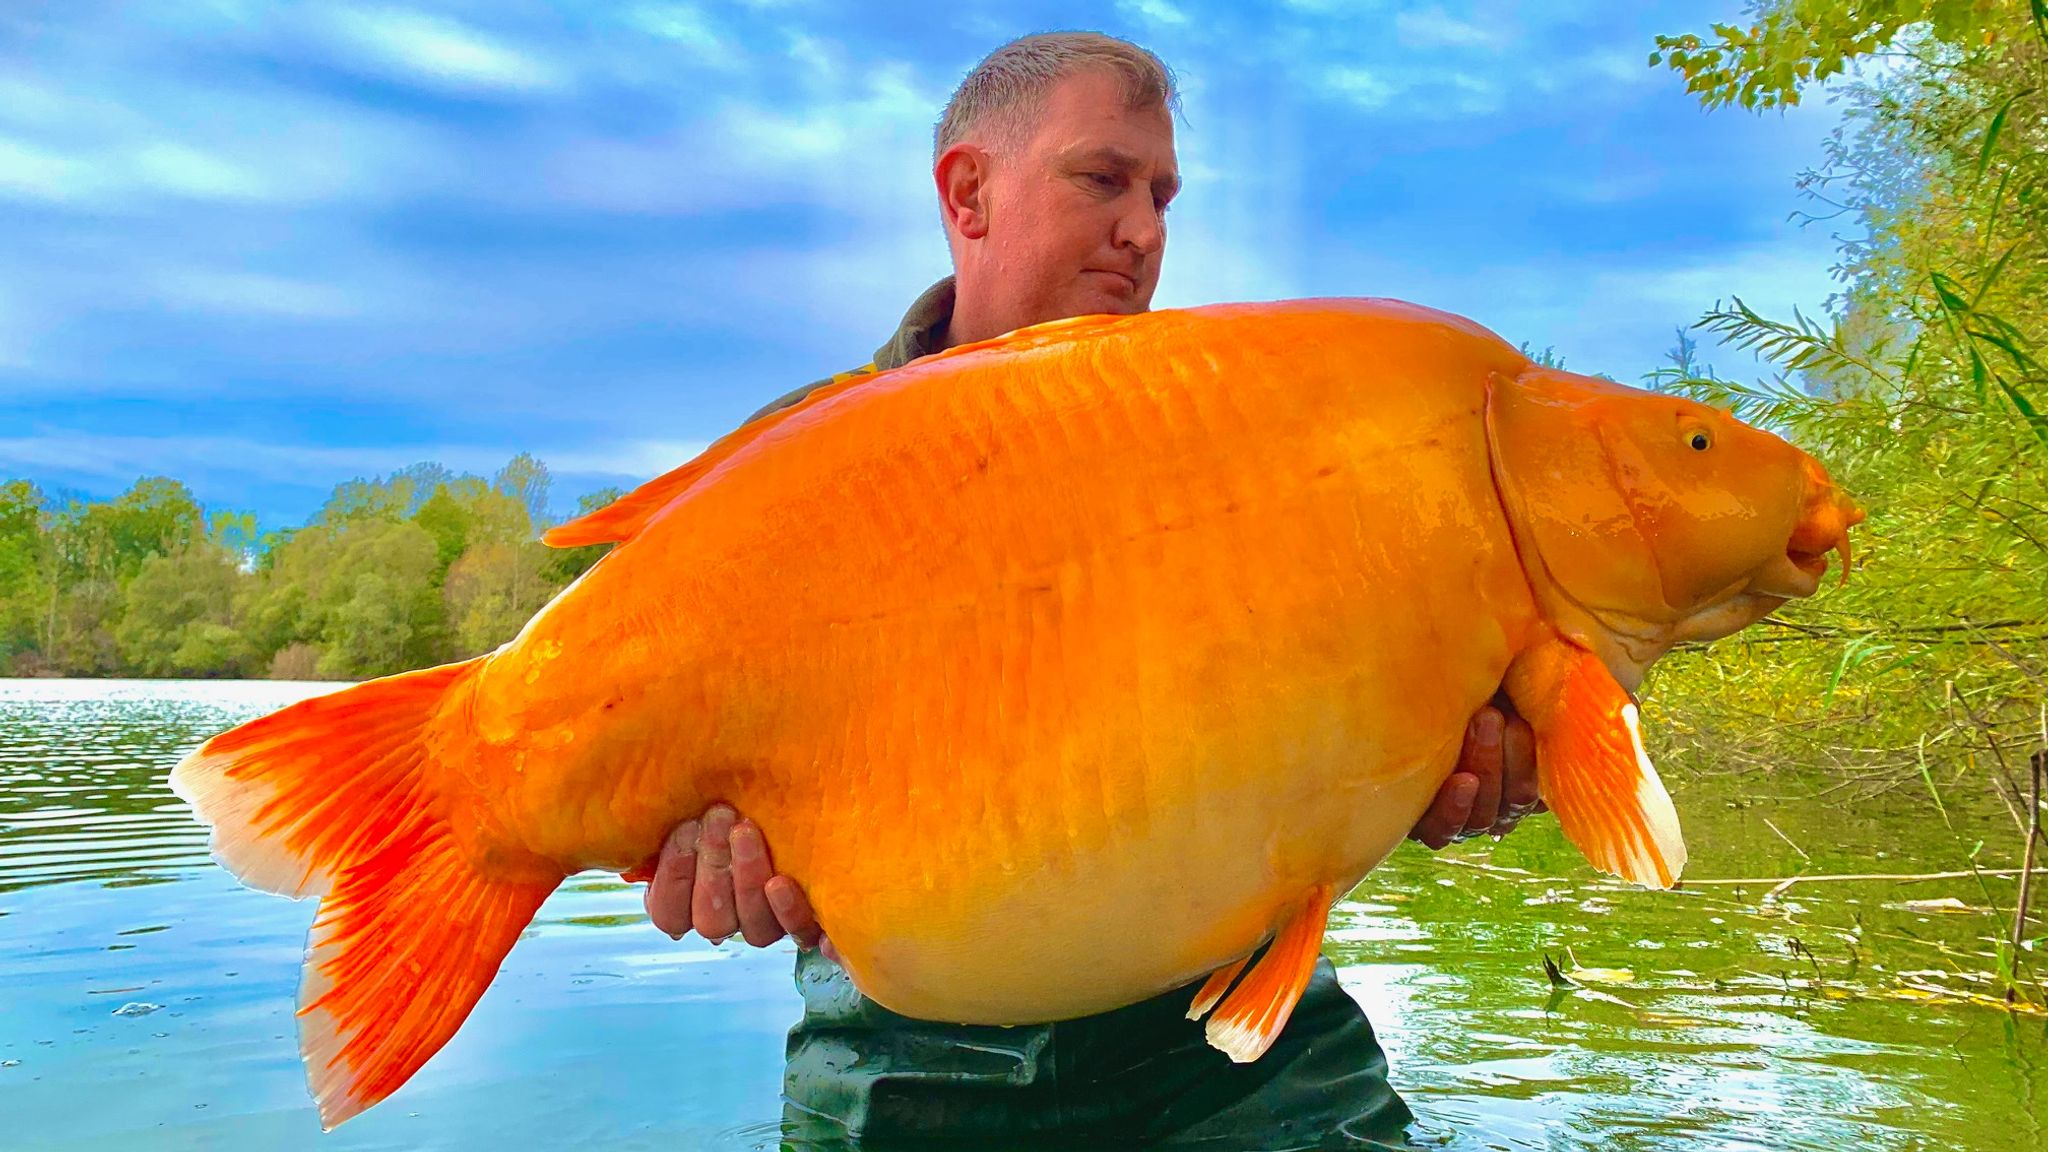 https://e3.365dm.com/22/11/2048x1152/skynews-giant-goldfish-carp_5974274.jpg